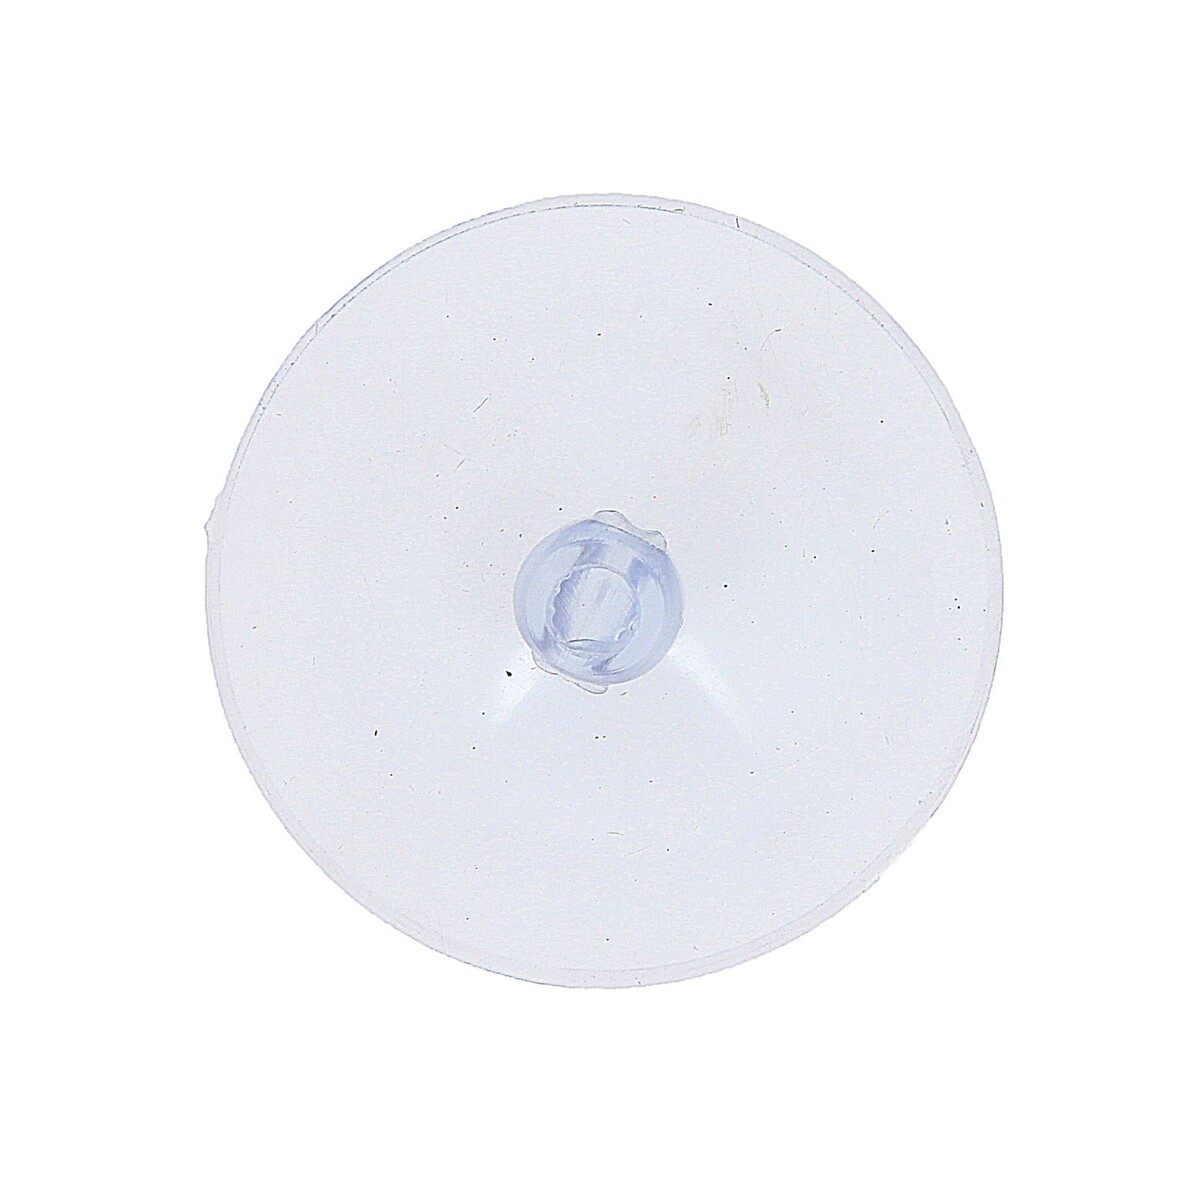 Присоска с дыркой сбоку, набор10 шт., диаметр: 4 см зажим присоска на лобовое стекло